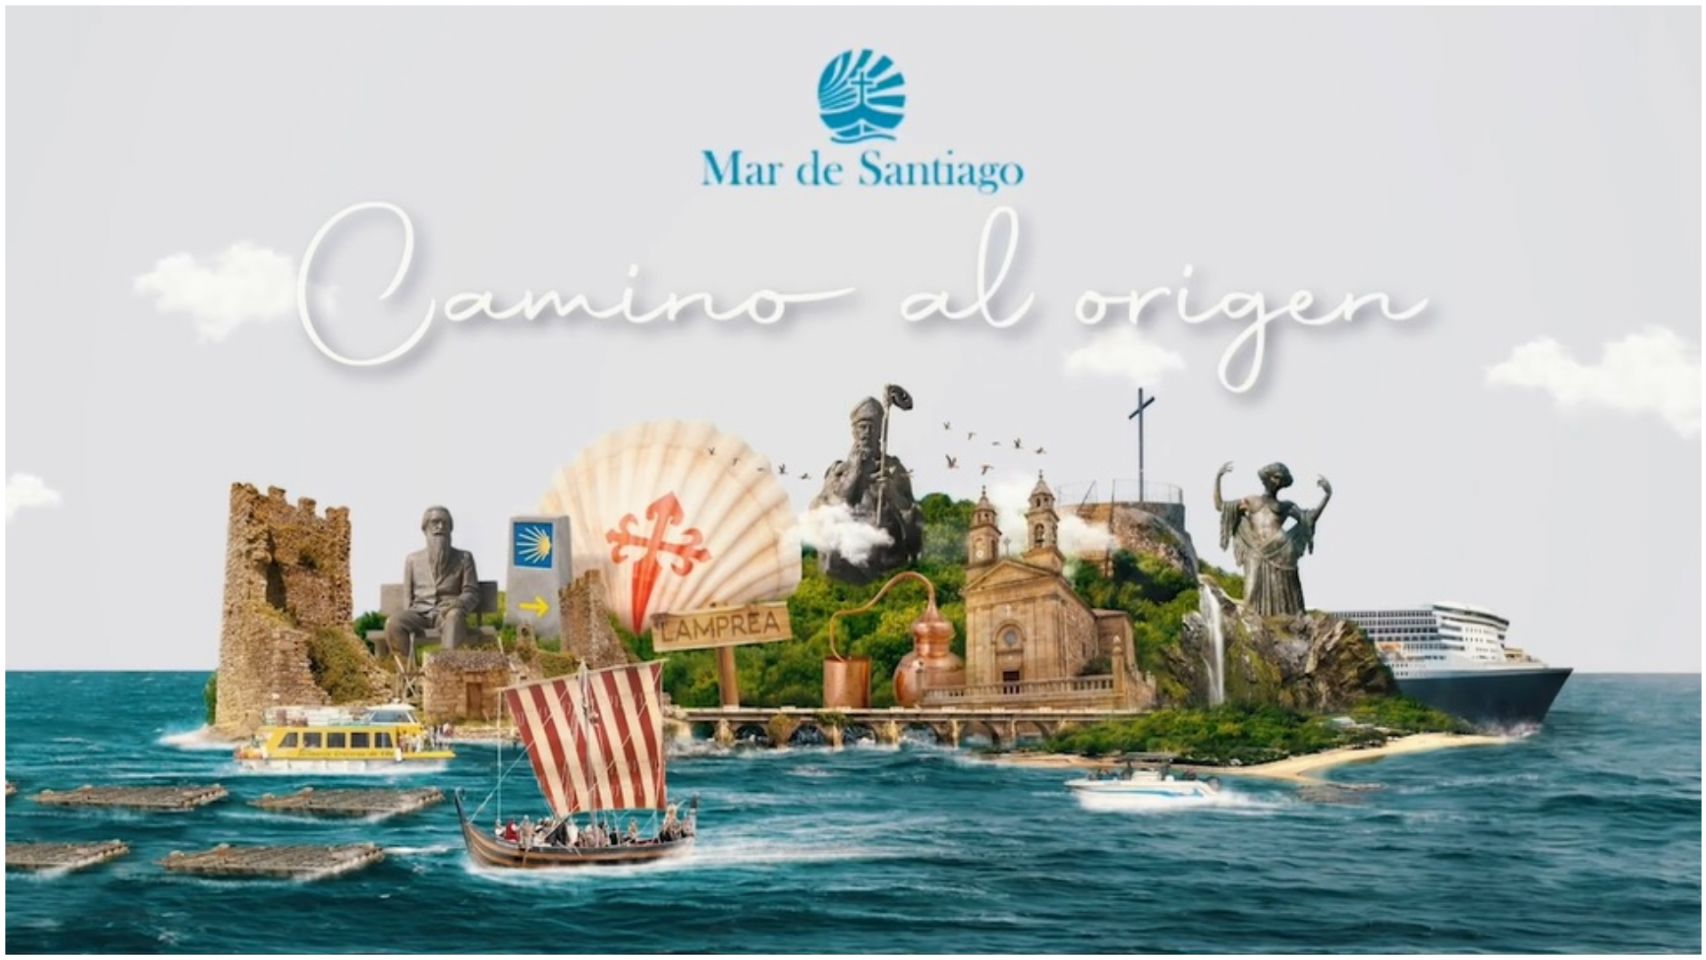 Imagen promocional de la marca Mar de Santiago.